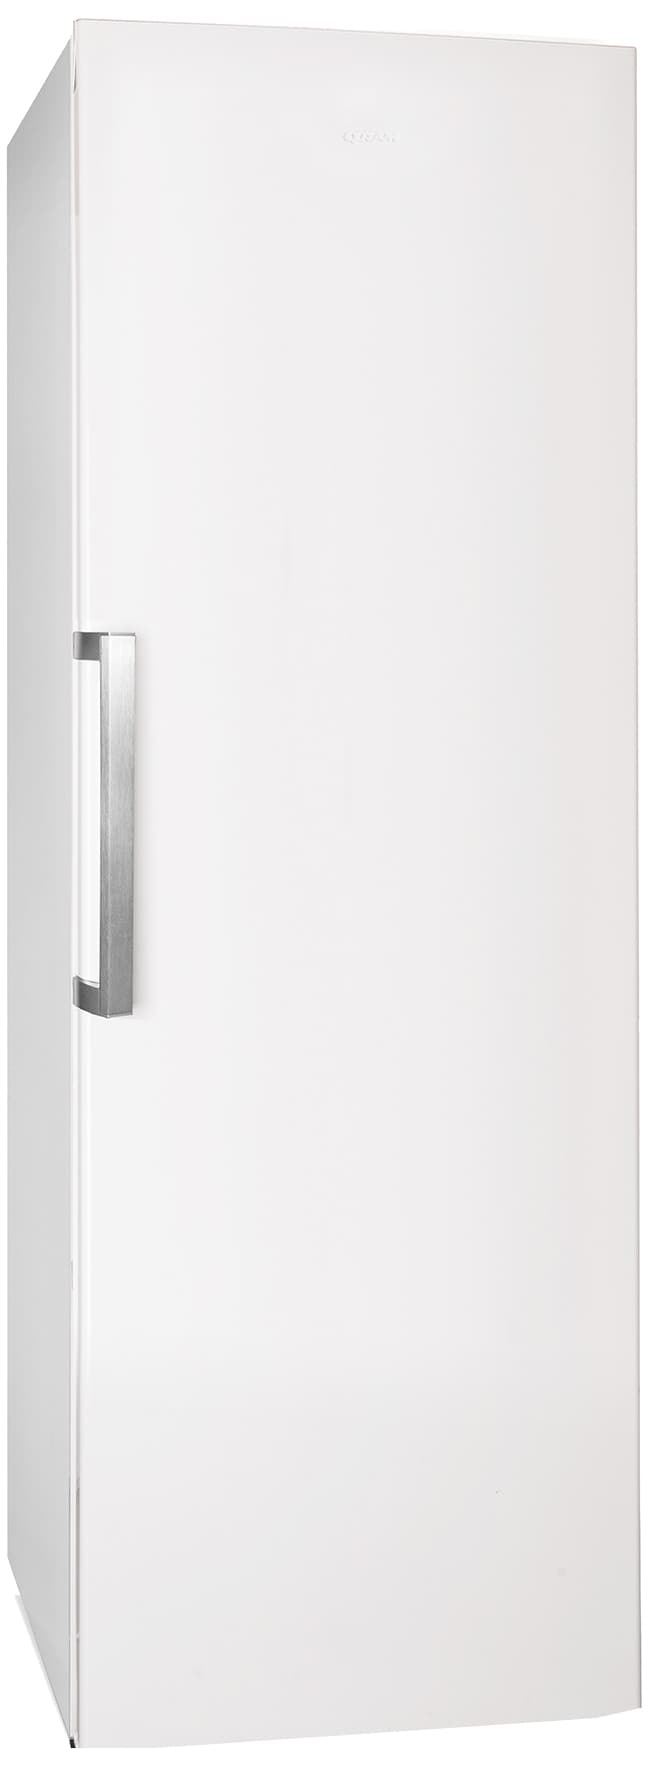 Gram køleskab LC342186 | Fritstående kølefryseskab